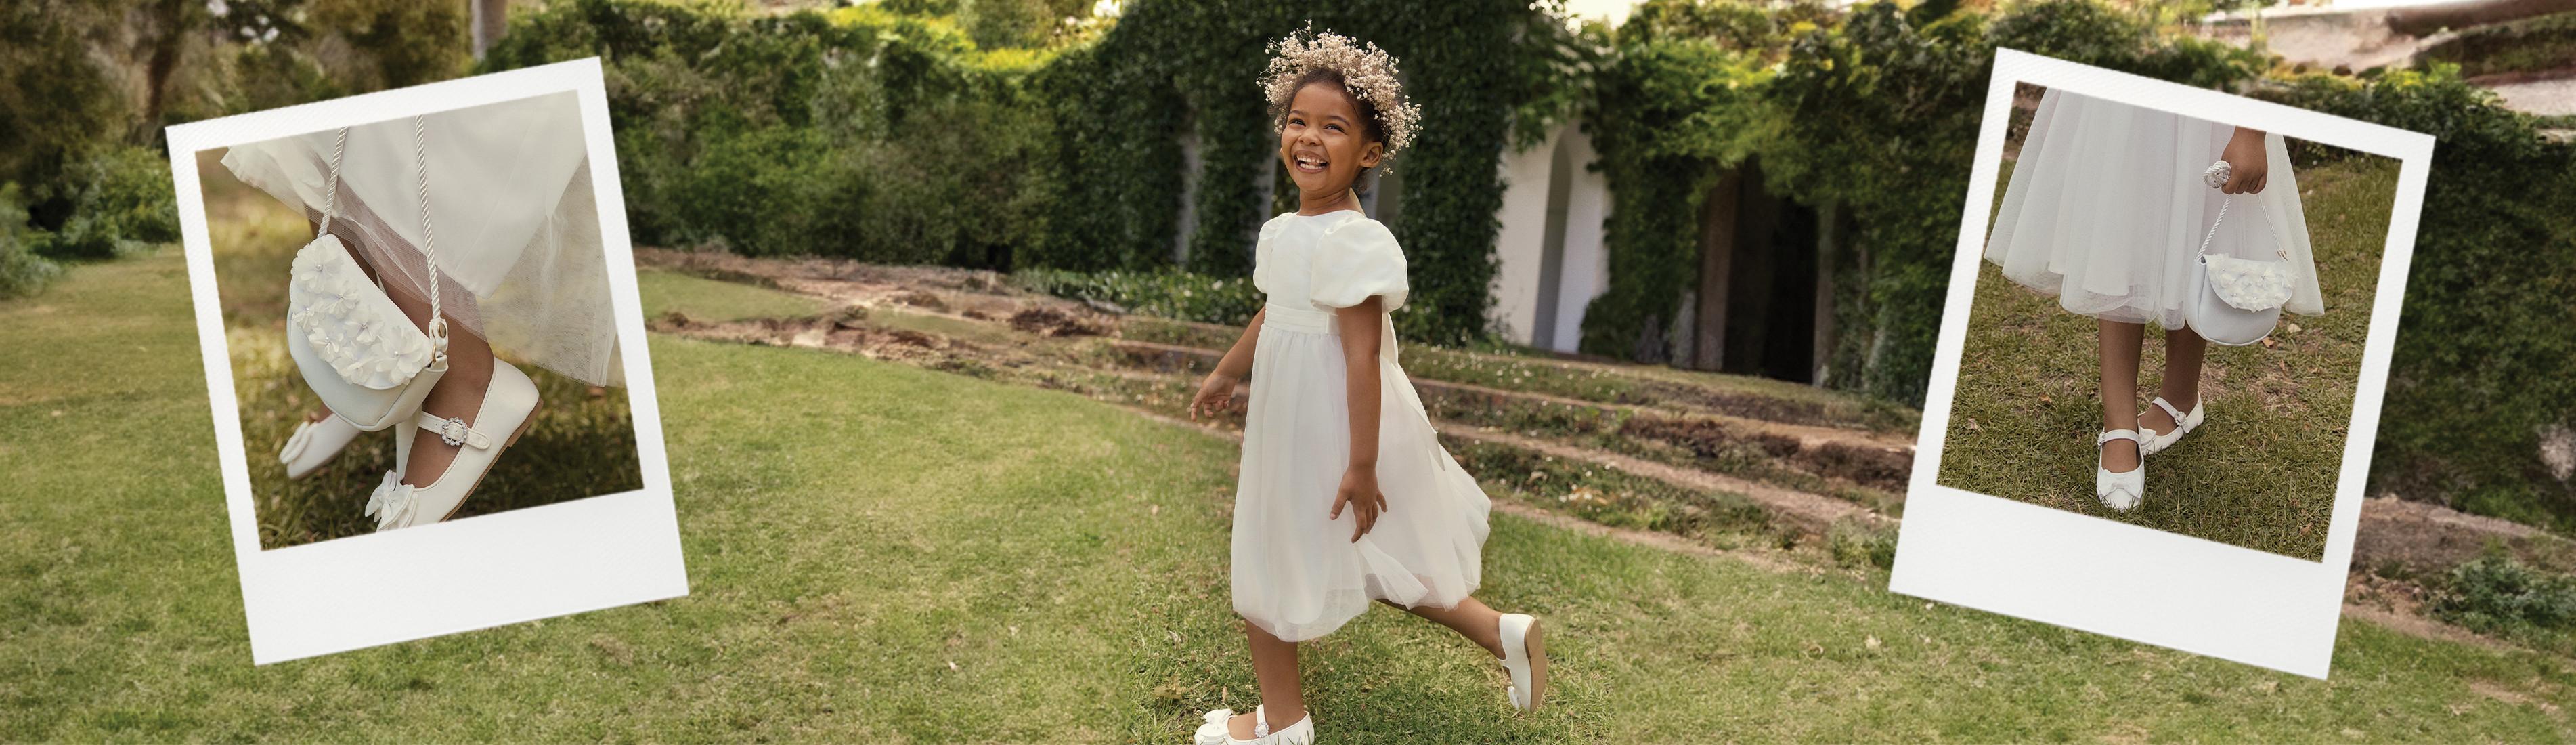 Kind in weißem Kleid und weißen Schuhen